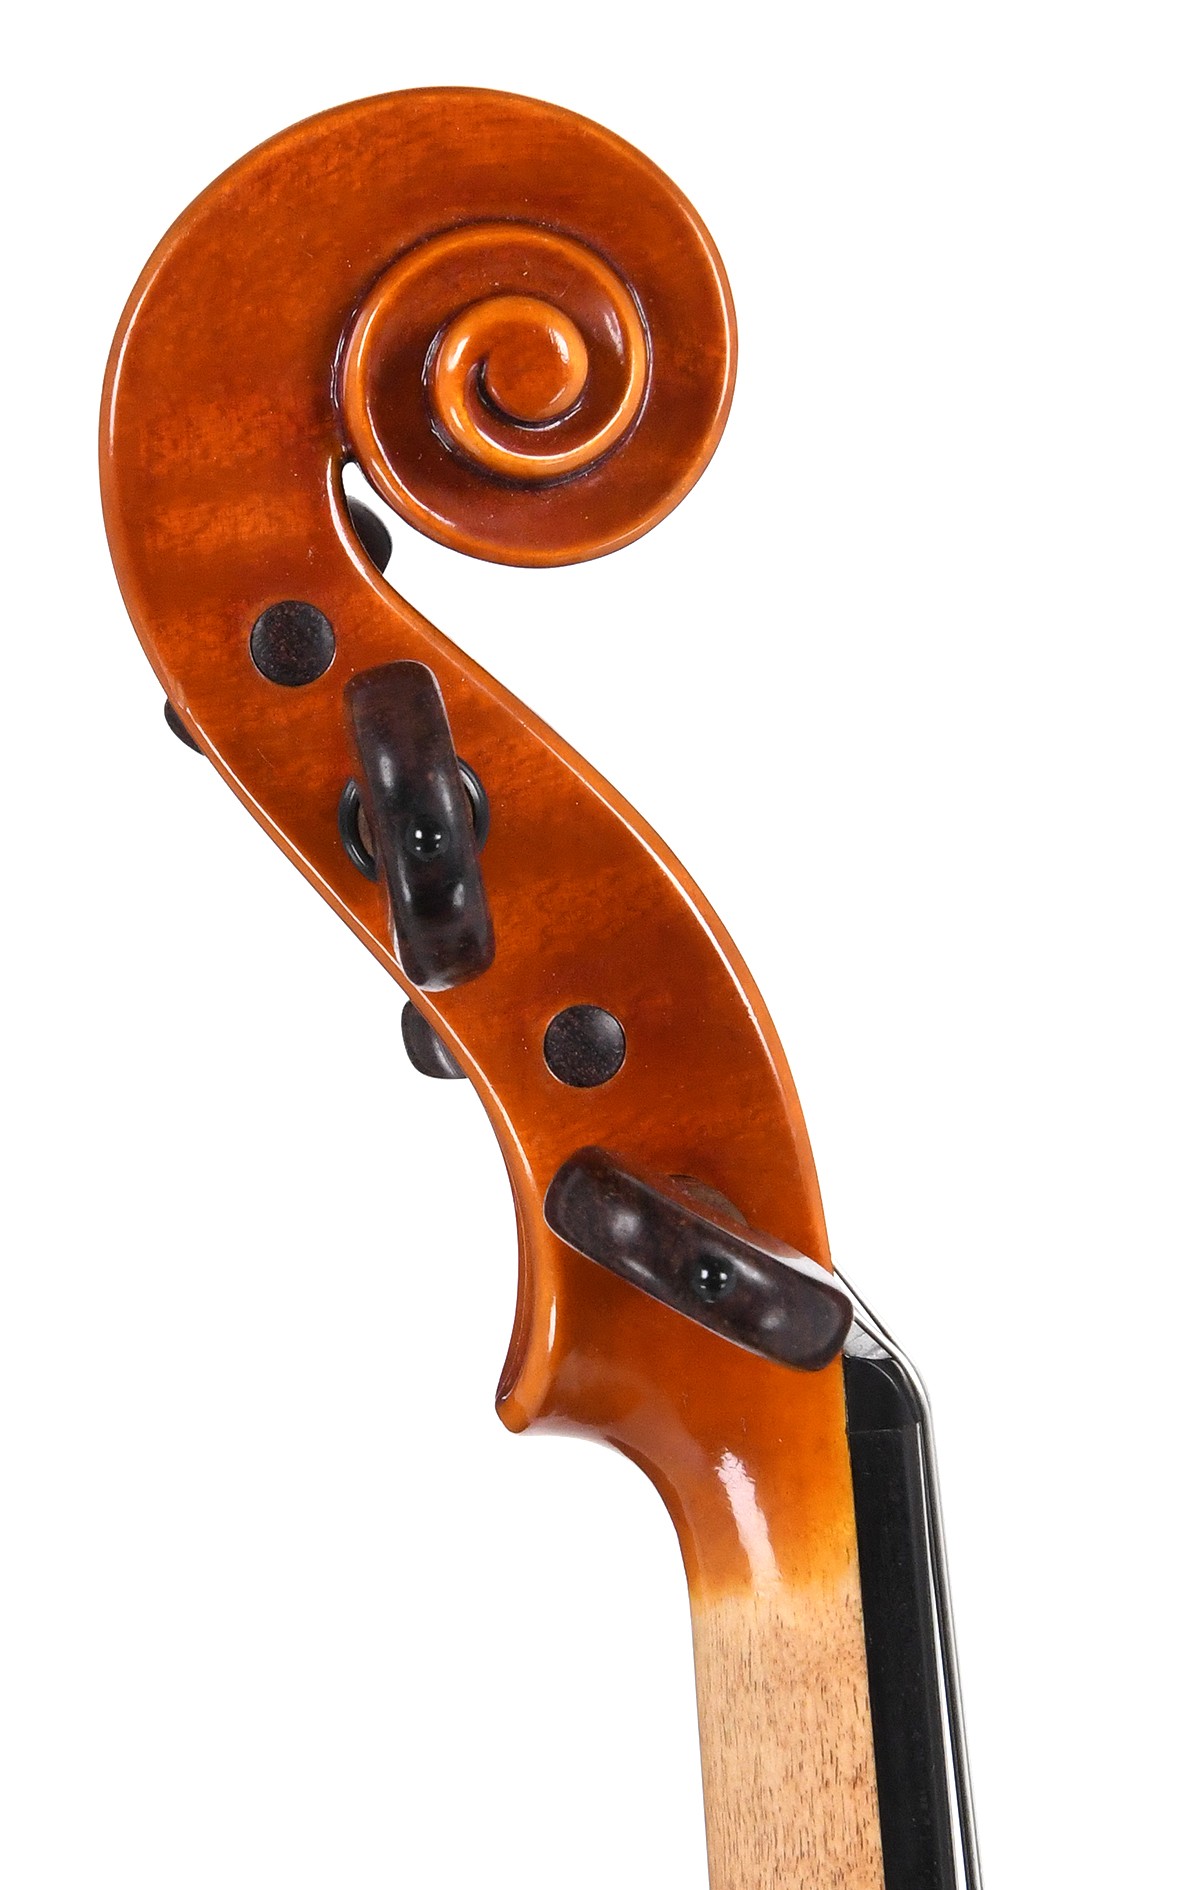 Contemporary Italian violin by Nicola Vendrame, Venice